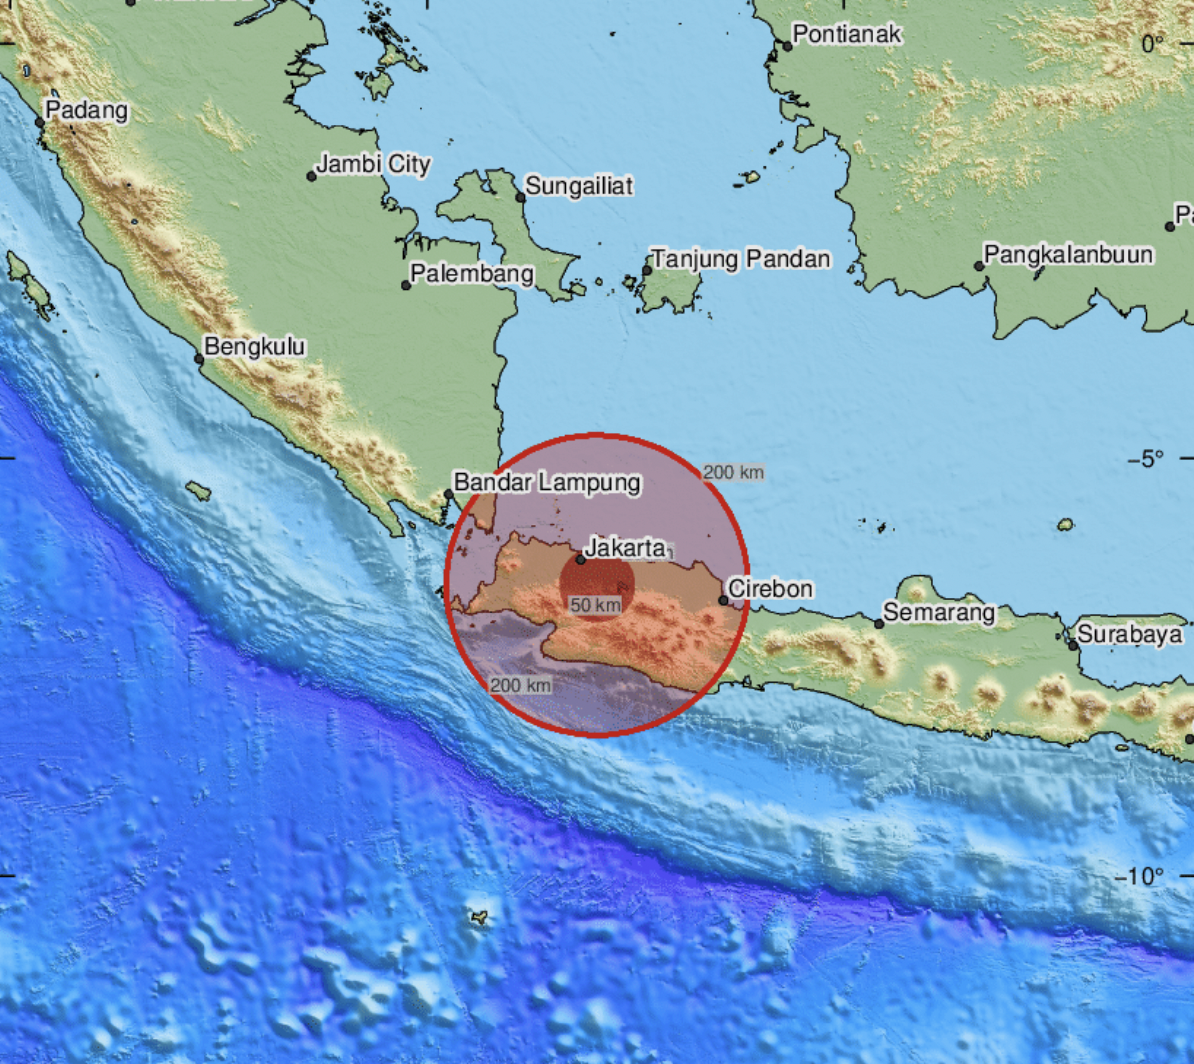 В Індонезії в результаті землетрусу загинули 252 особи, серед жертв багато дітей. Фото і відео 